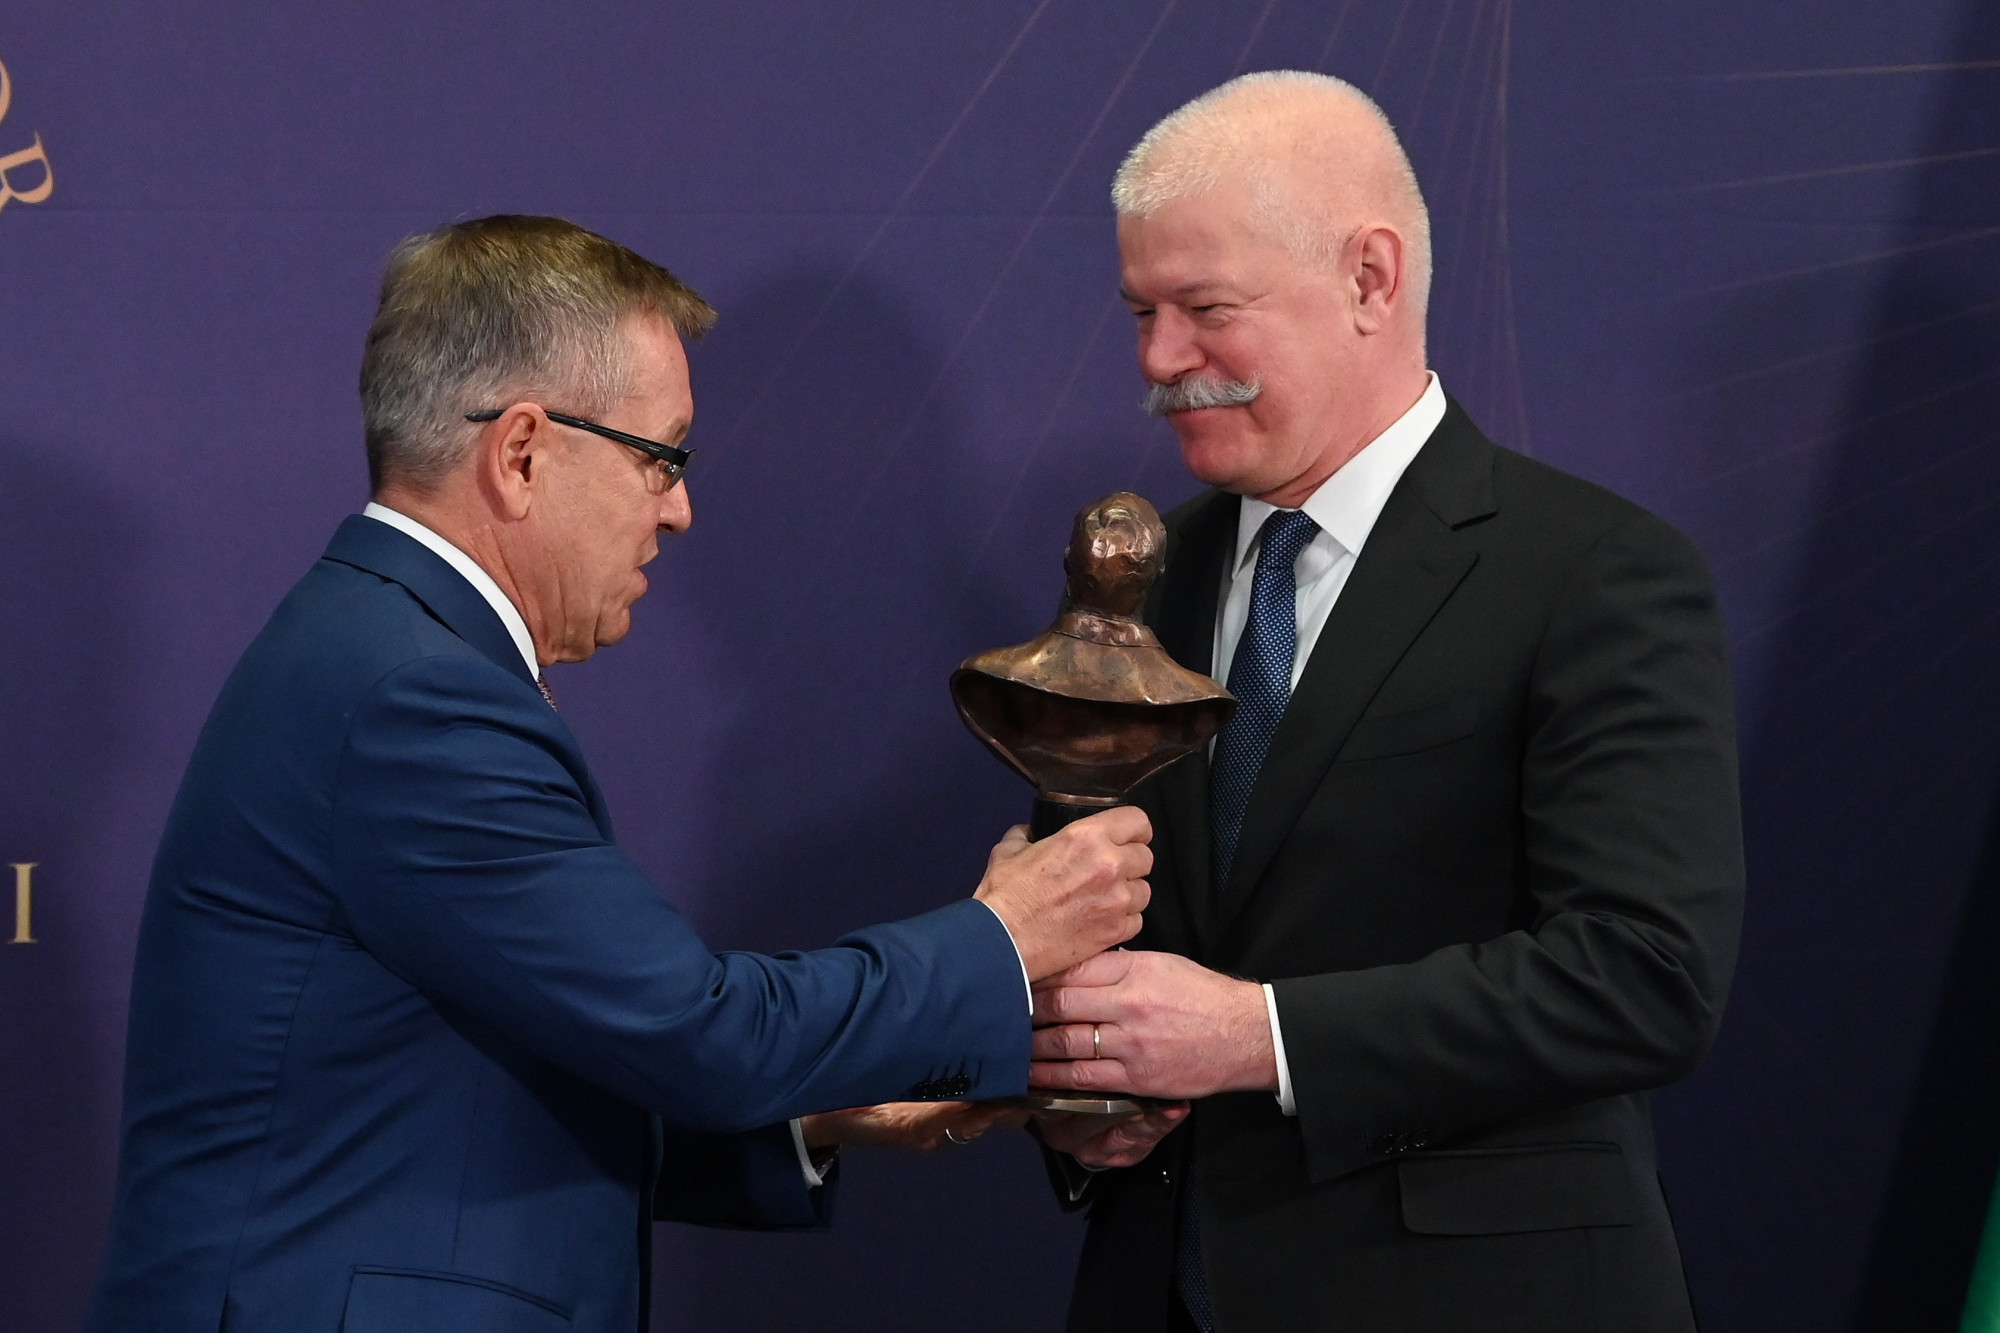 Csák János díjat kapott Matolcsy Györgytől